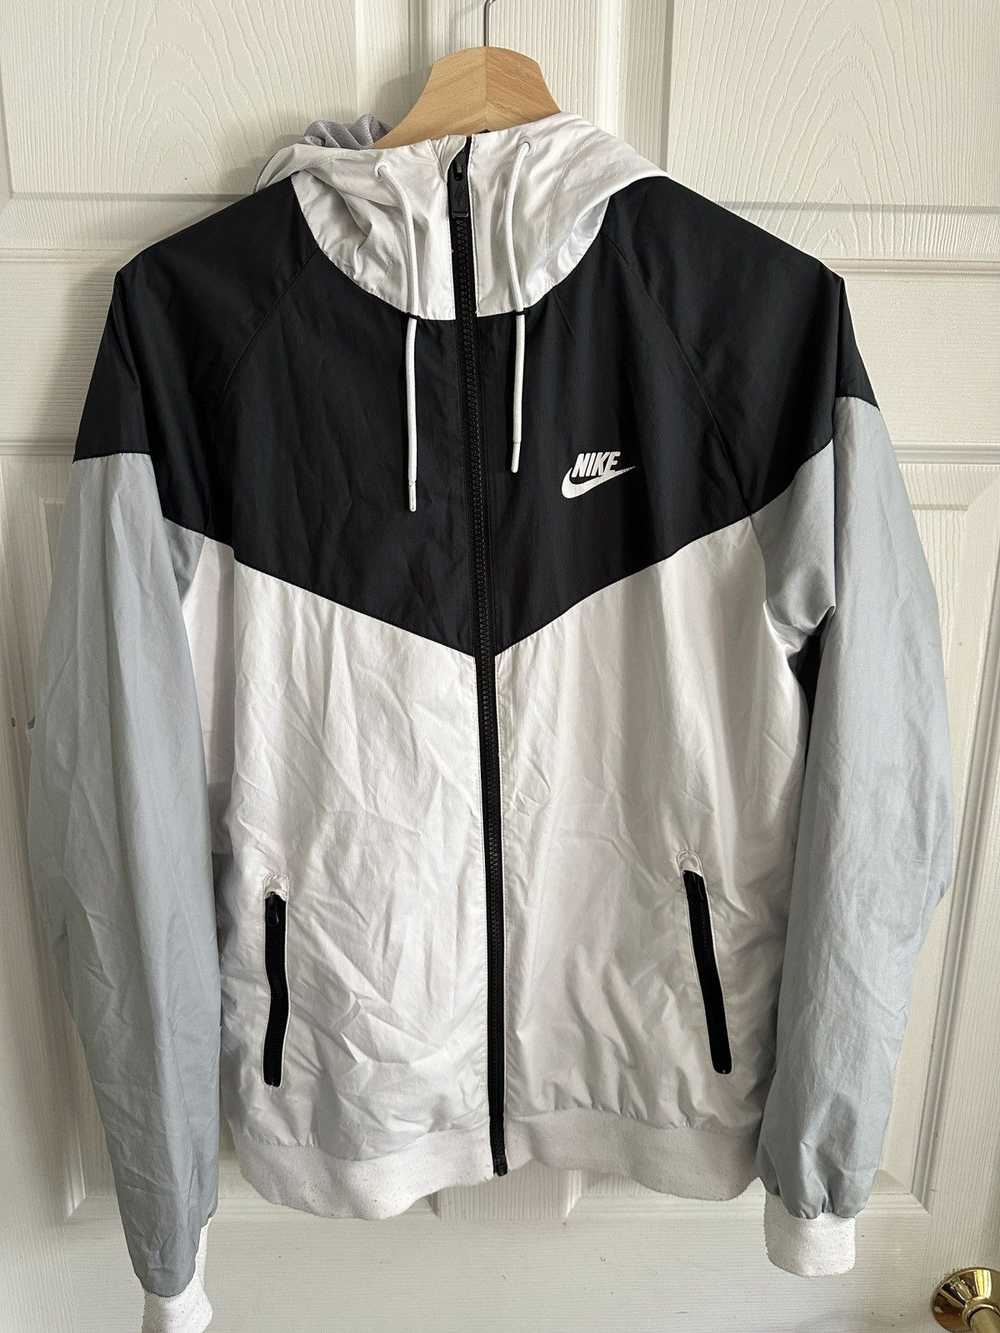 Nike Nike Raincoat - image 1